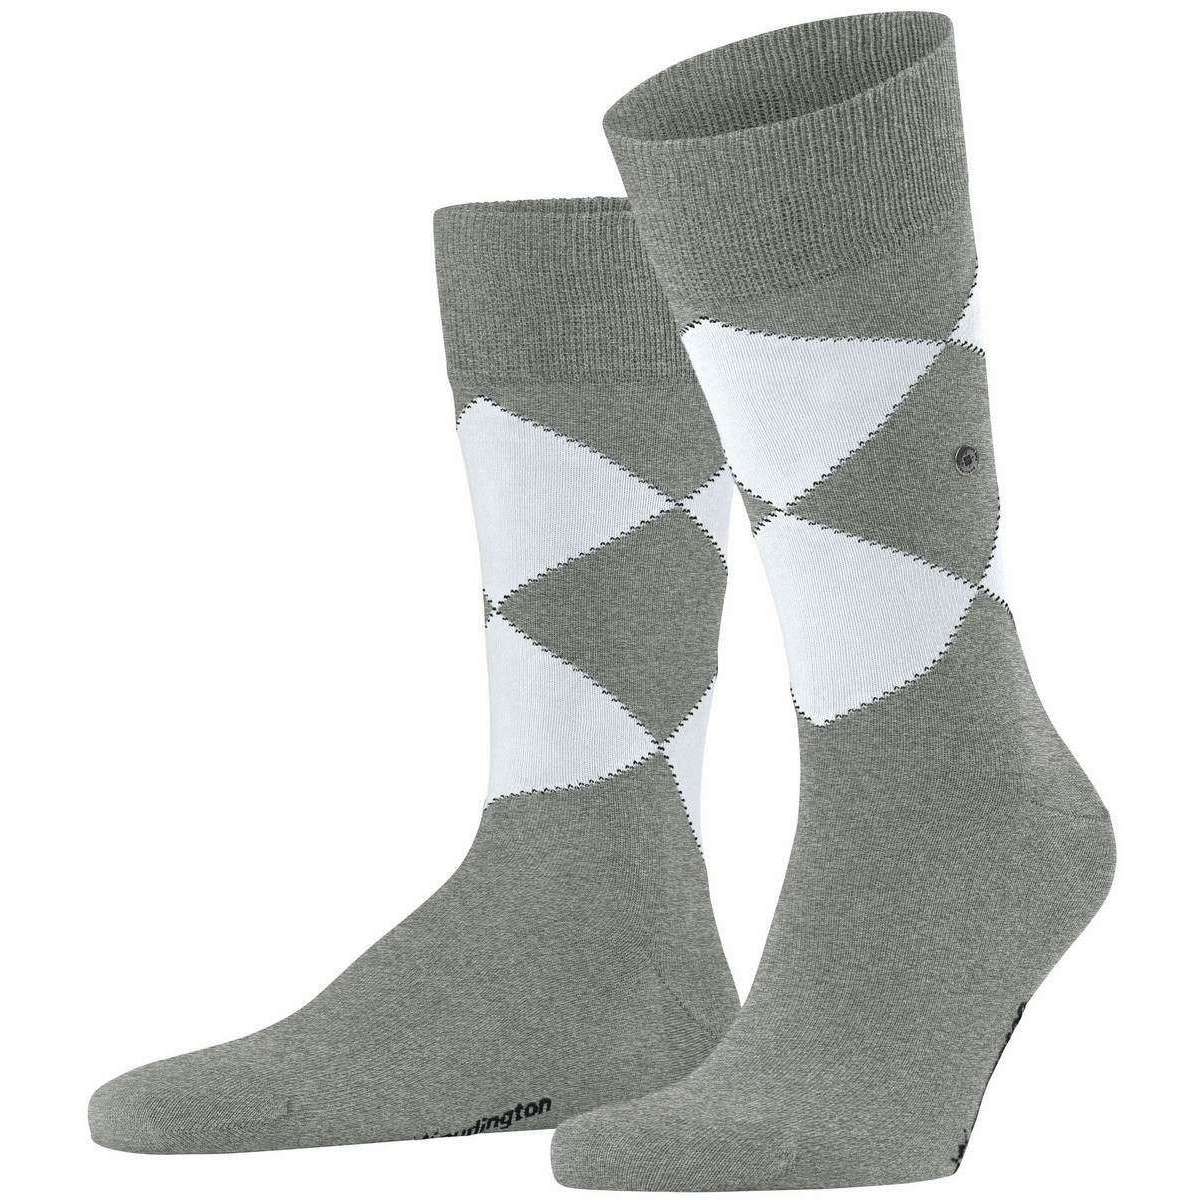 Burlington Kingston Socks - Light Grey/White